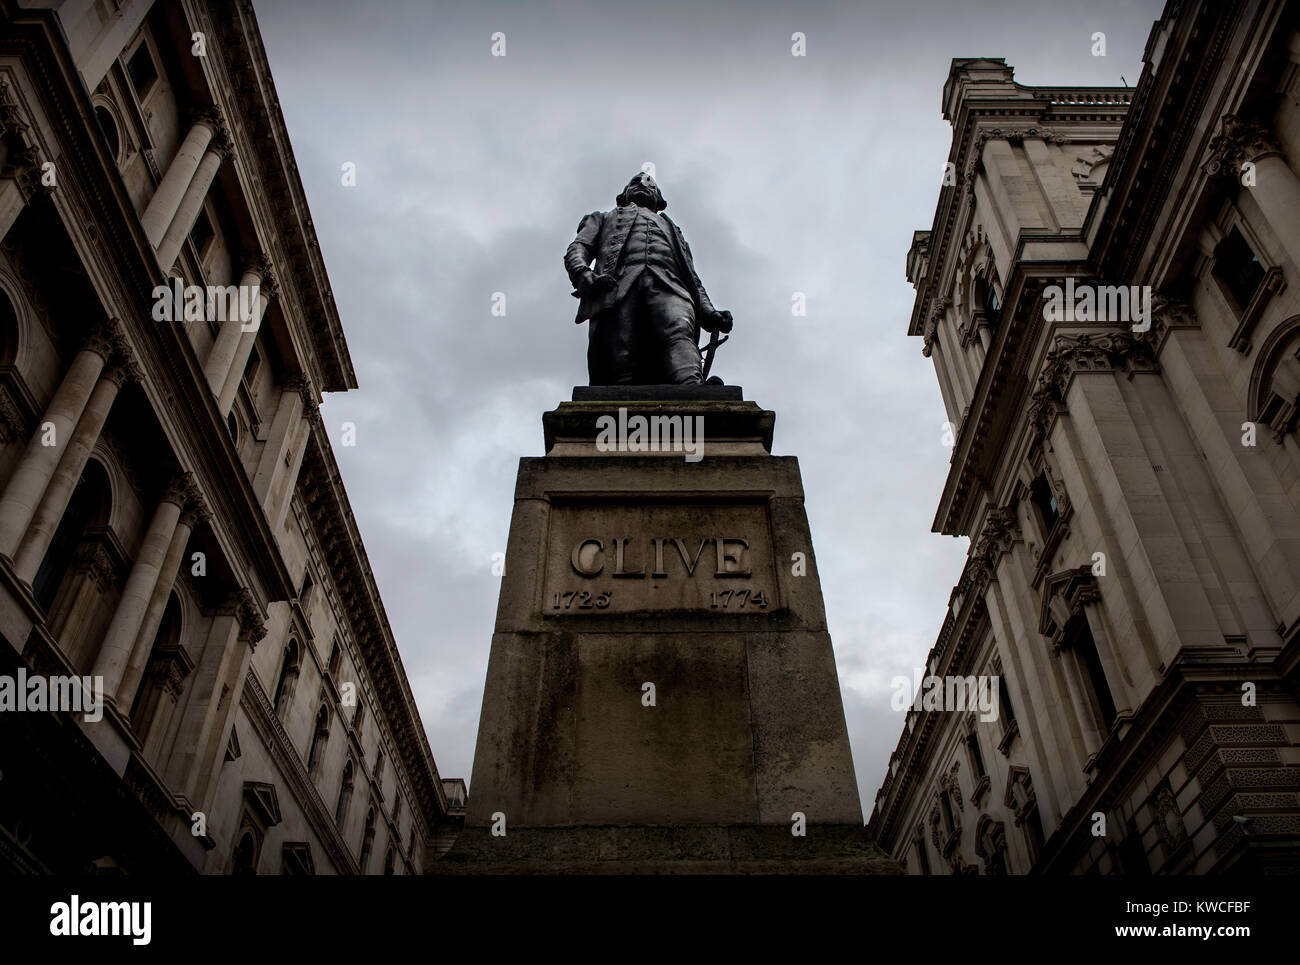 Clive de la India estatua, un grado II-enumerados estatua de bronce de Robert Clive, 1er Barón Clive, por John Tweed, está situado en King Charles Street, Whitehall, Foto de stock